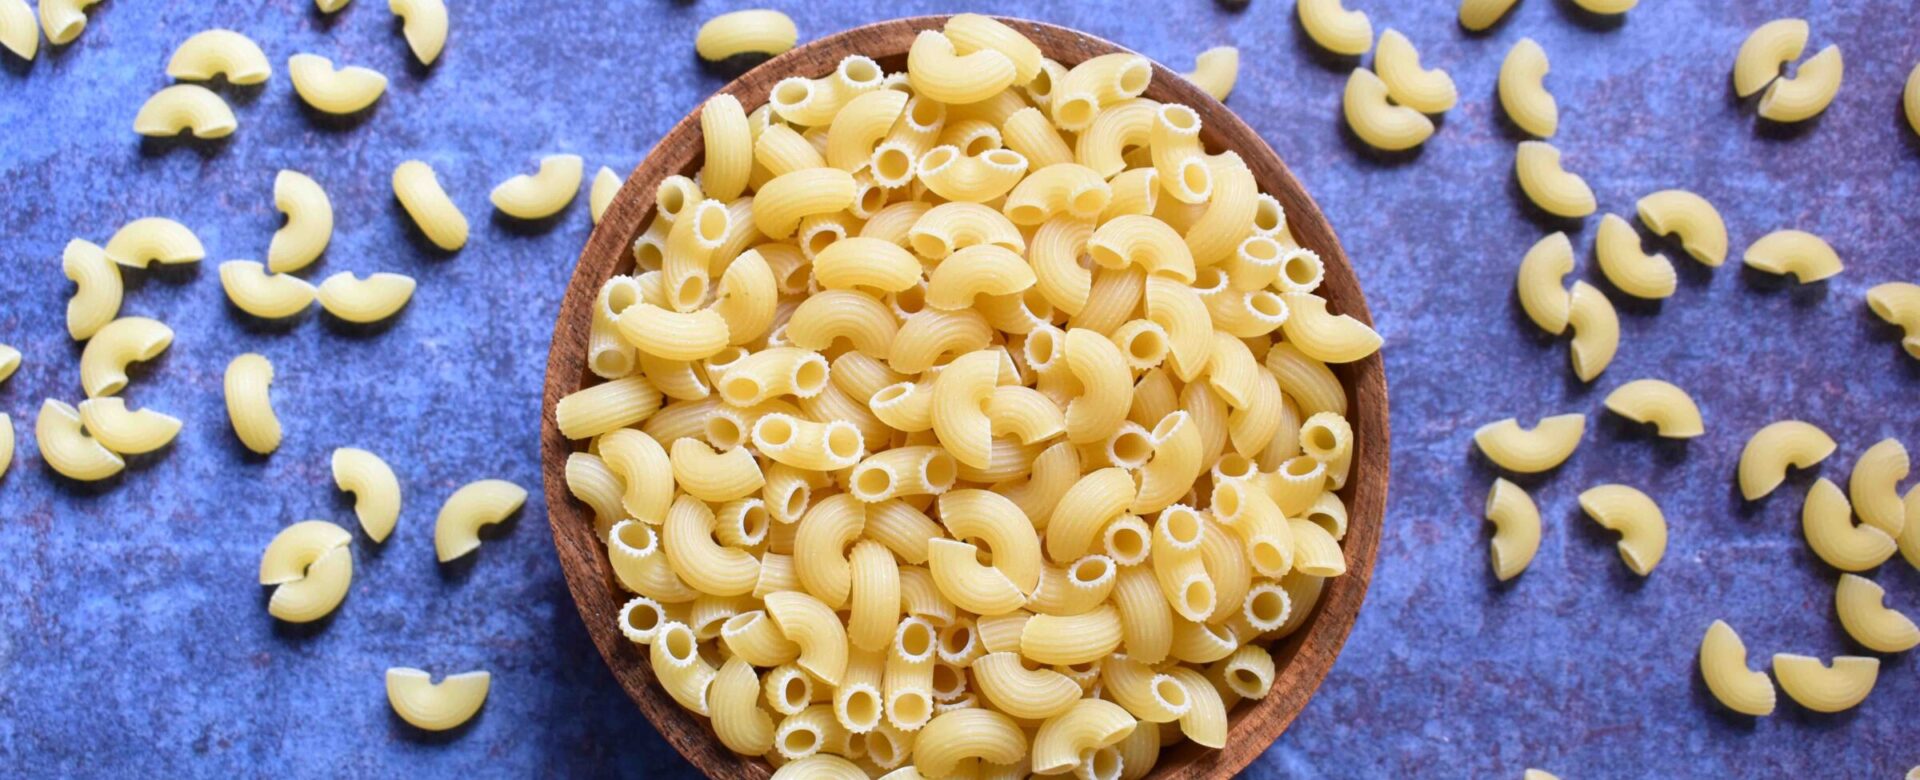 Hoeveel calorieën zitten er in macaroni?